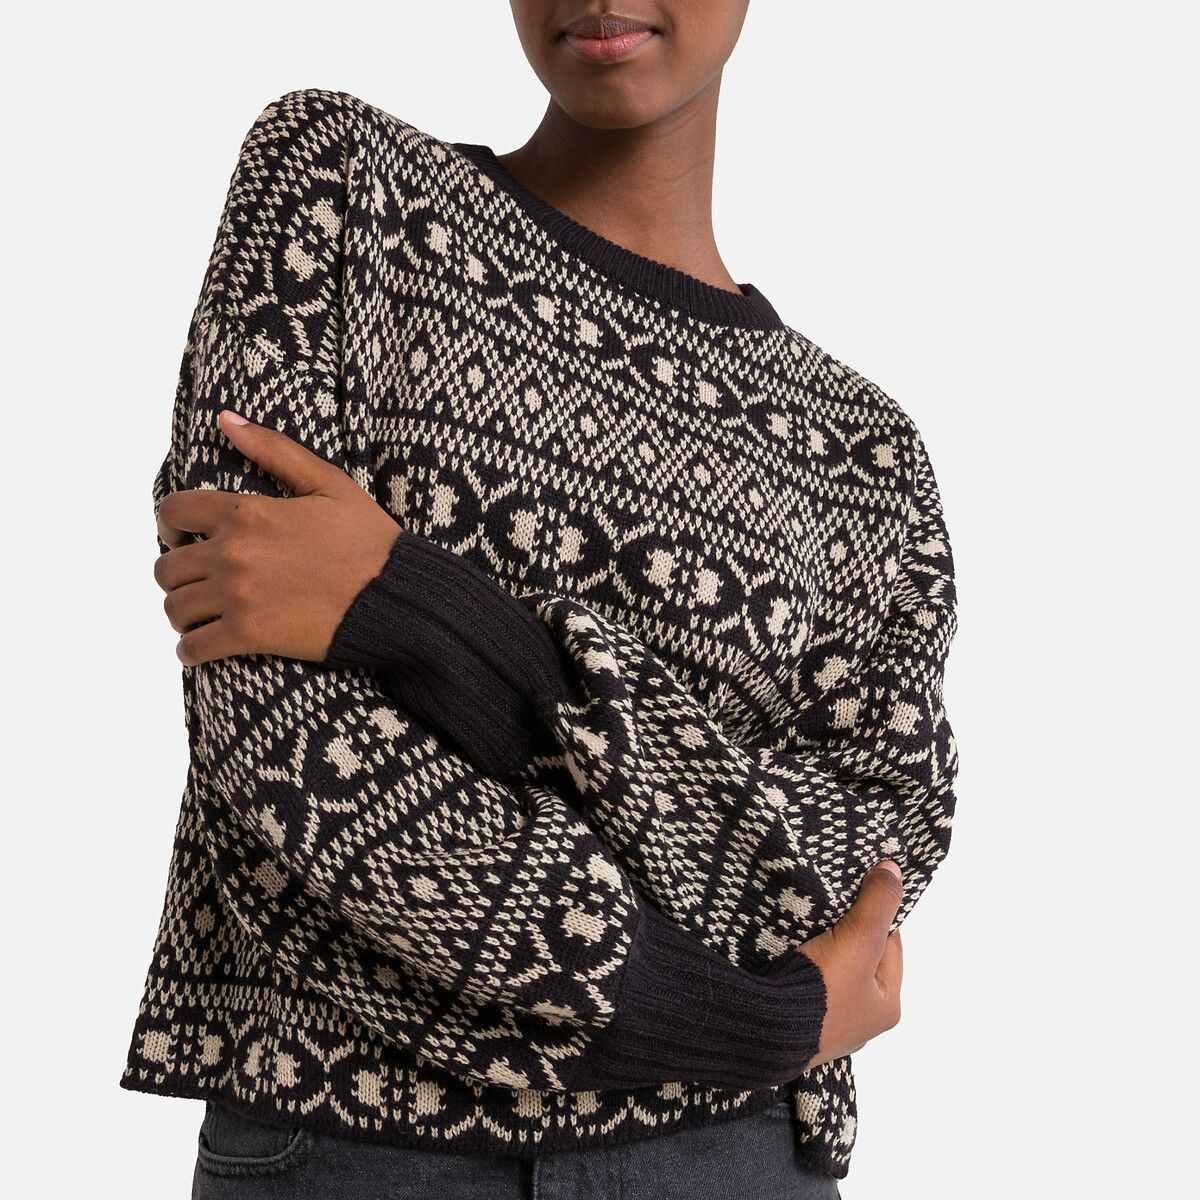 Пуловер Укороченный с жаккардовым узором M черный LaRedoute, размер M - фото 3